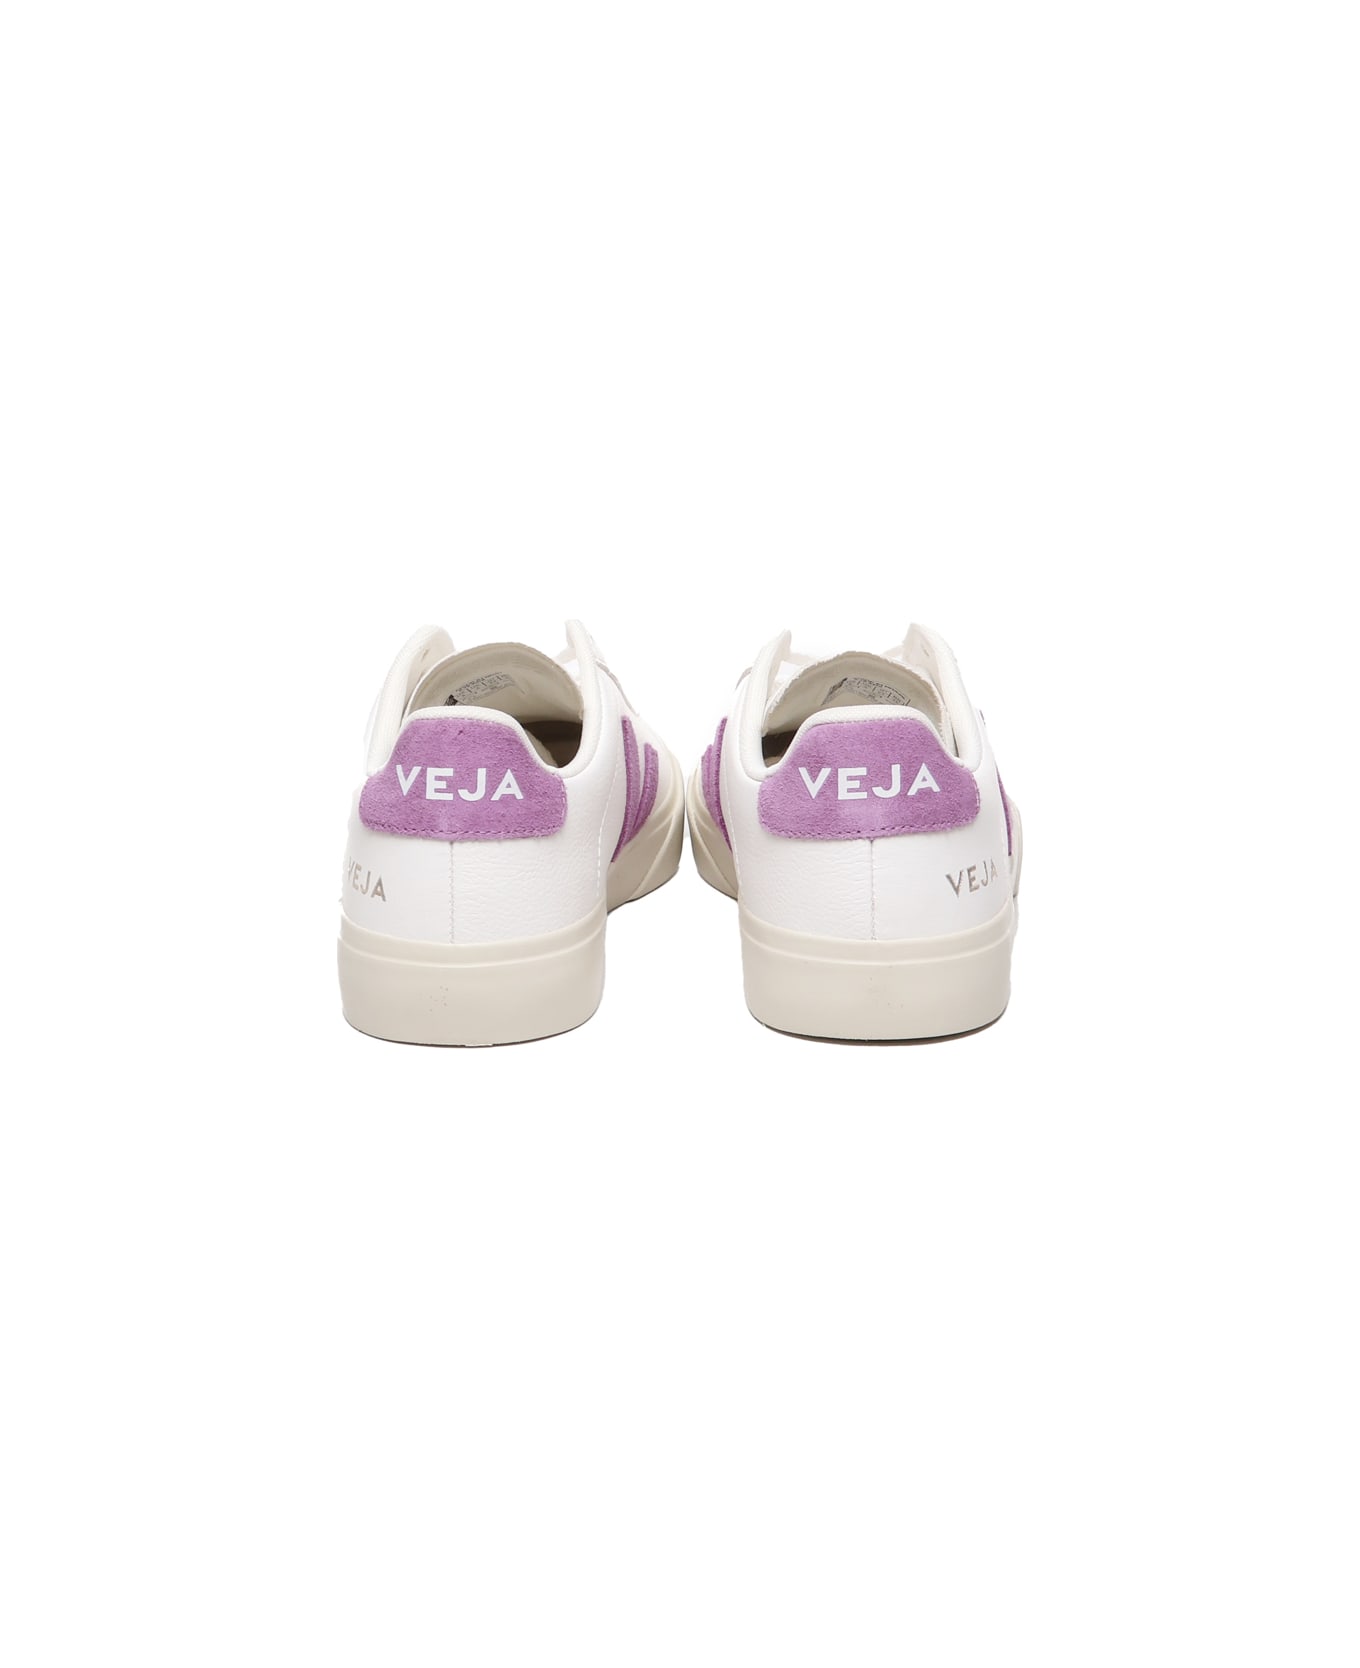 Veja Logo Sneakers - White, purple